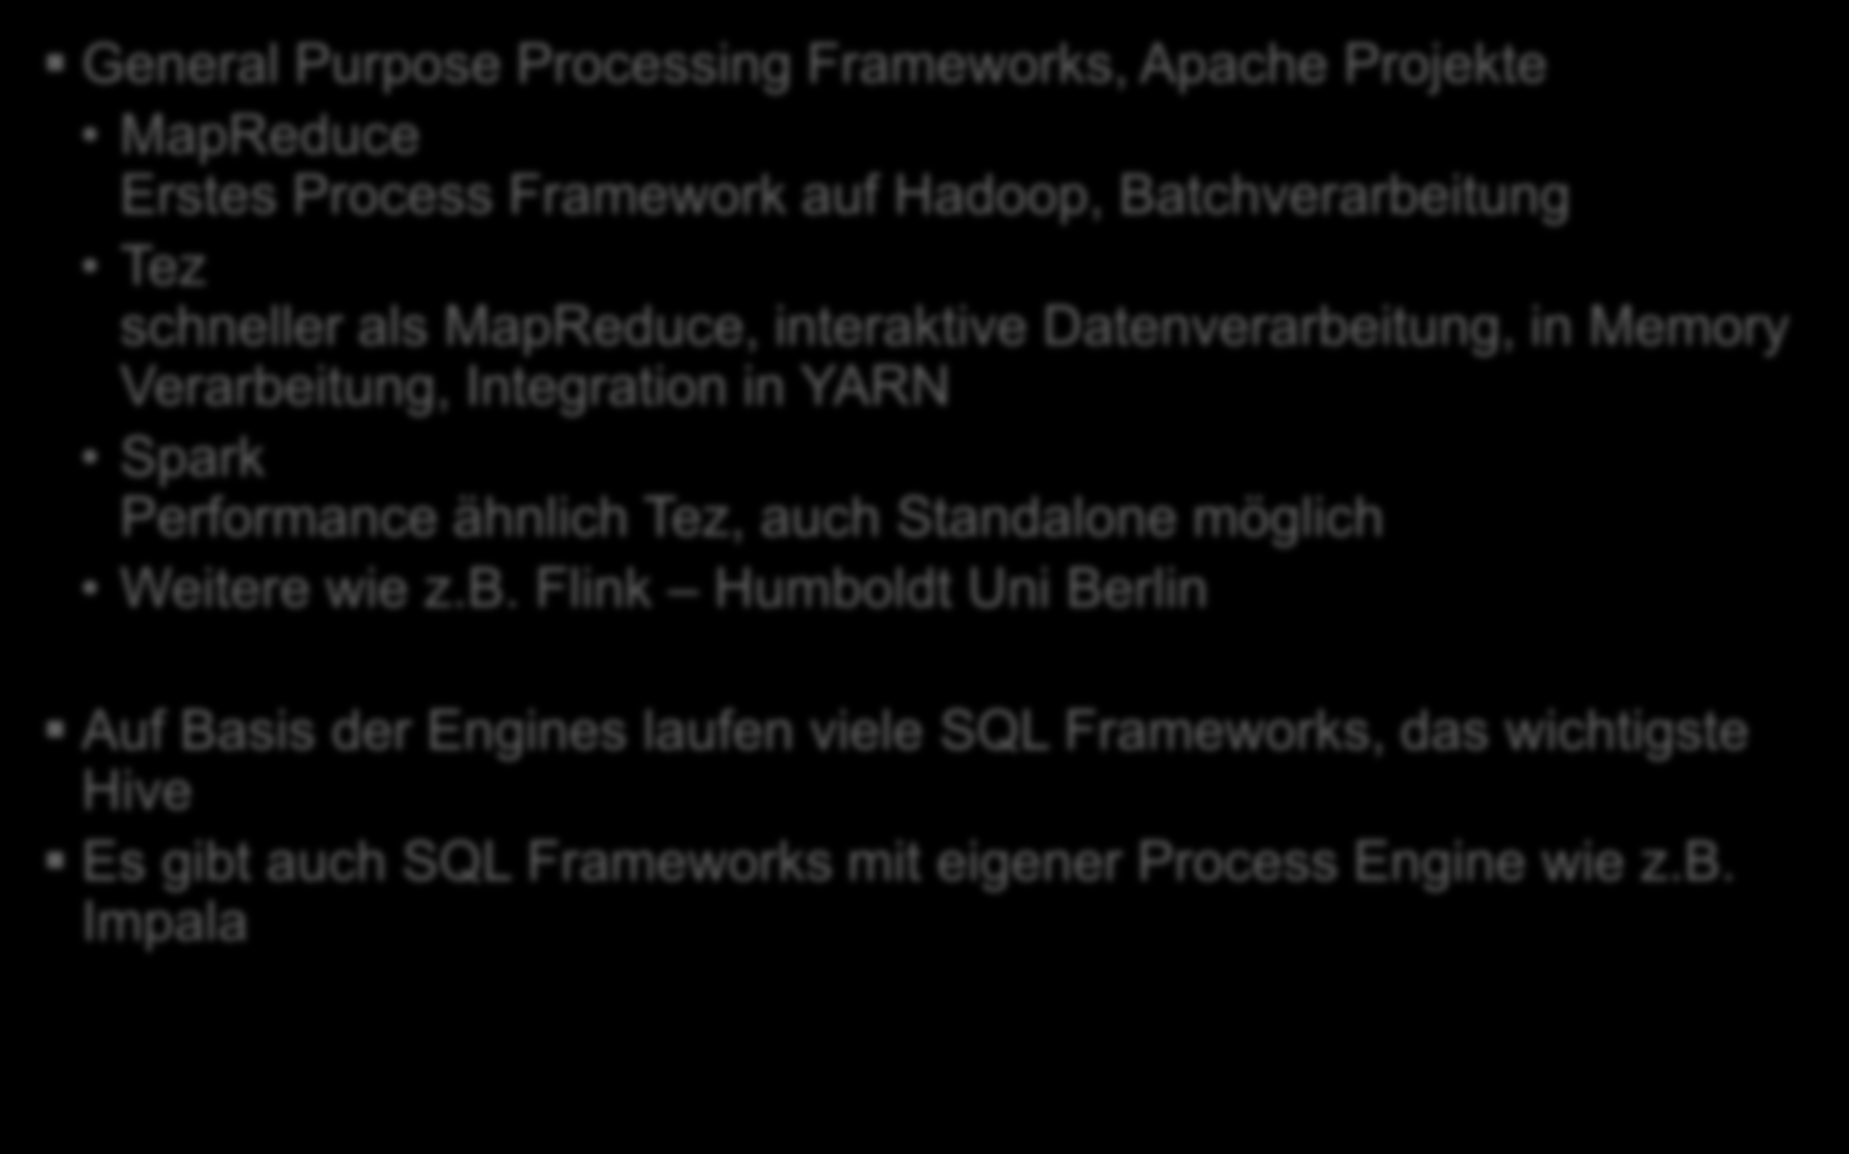 Process Engines General Purpose Processing Frameworks, Apache Projekte MapReduce Erstes Process Framework auf Hadoop, Batchverarbeitung Tez schneller als MapReduce, interaktive Datenverarbeitung, in